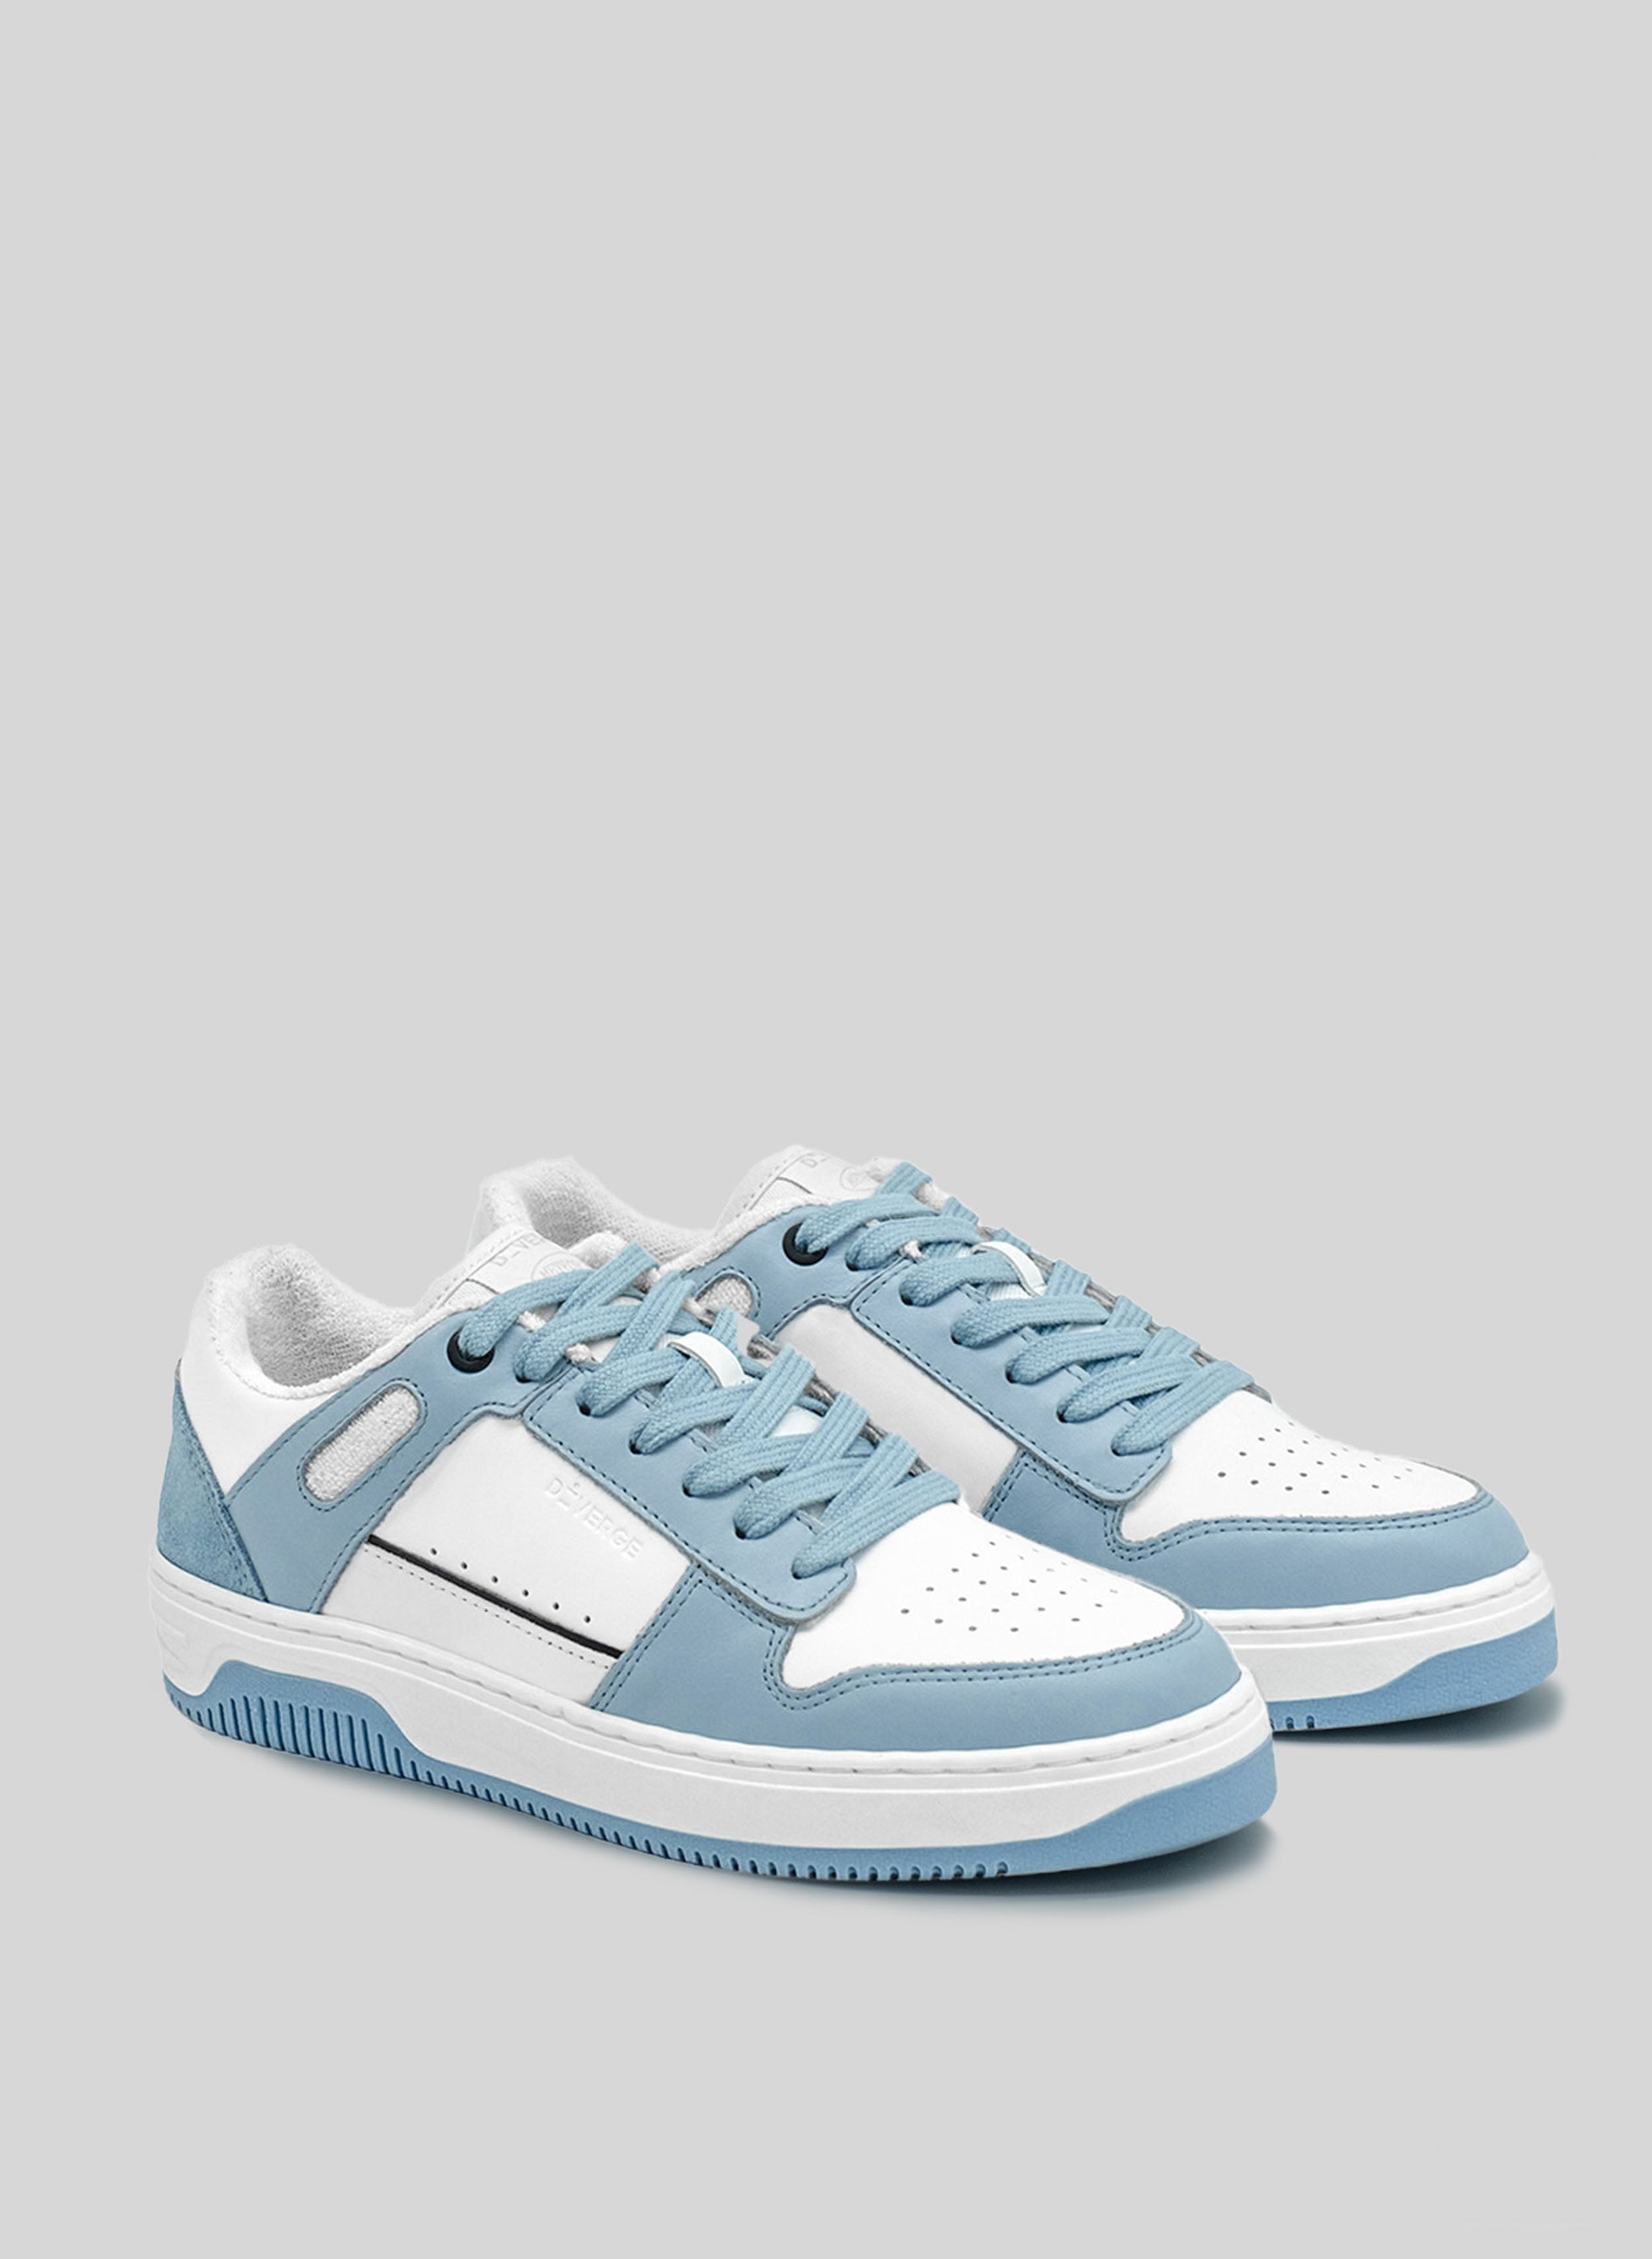 sneakers azul con suela blanca y azul de Diverge, promoviendo el impacto social y el calzado personalizado a través del proyecto imagine. 